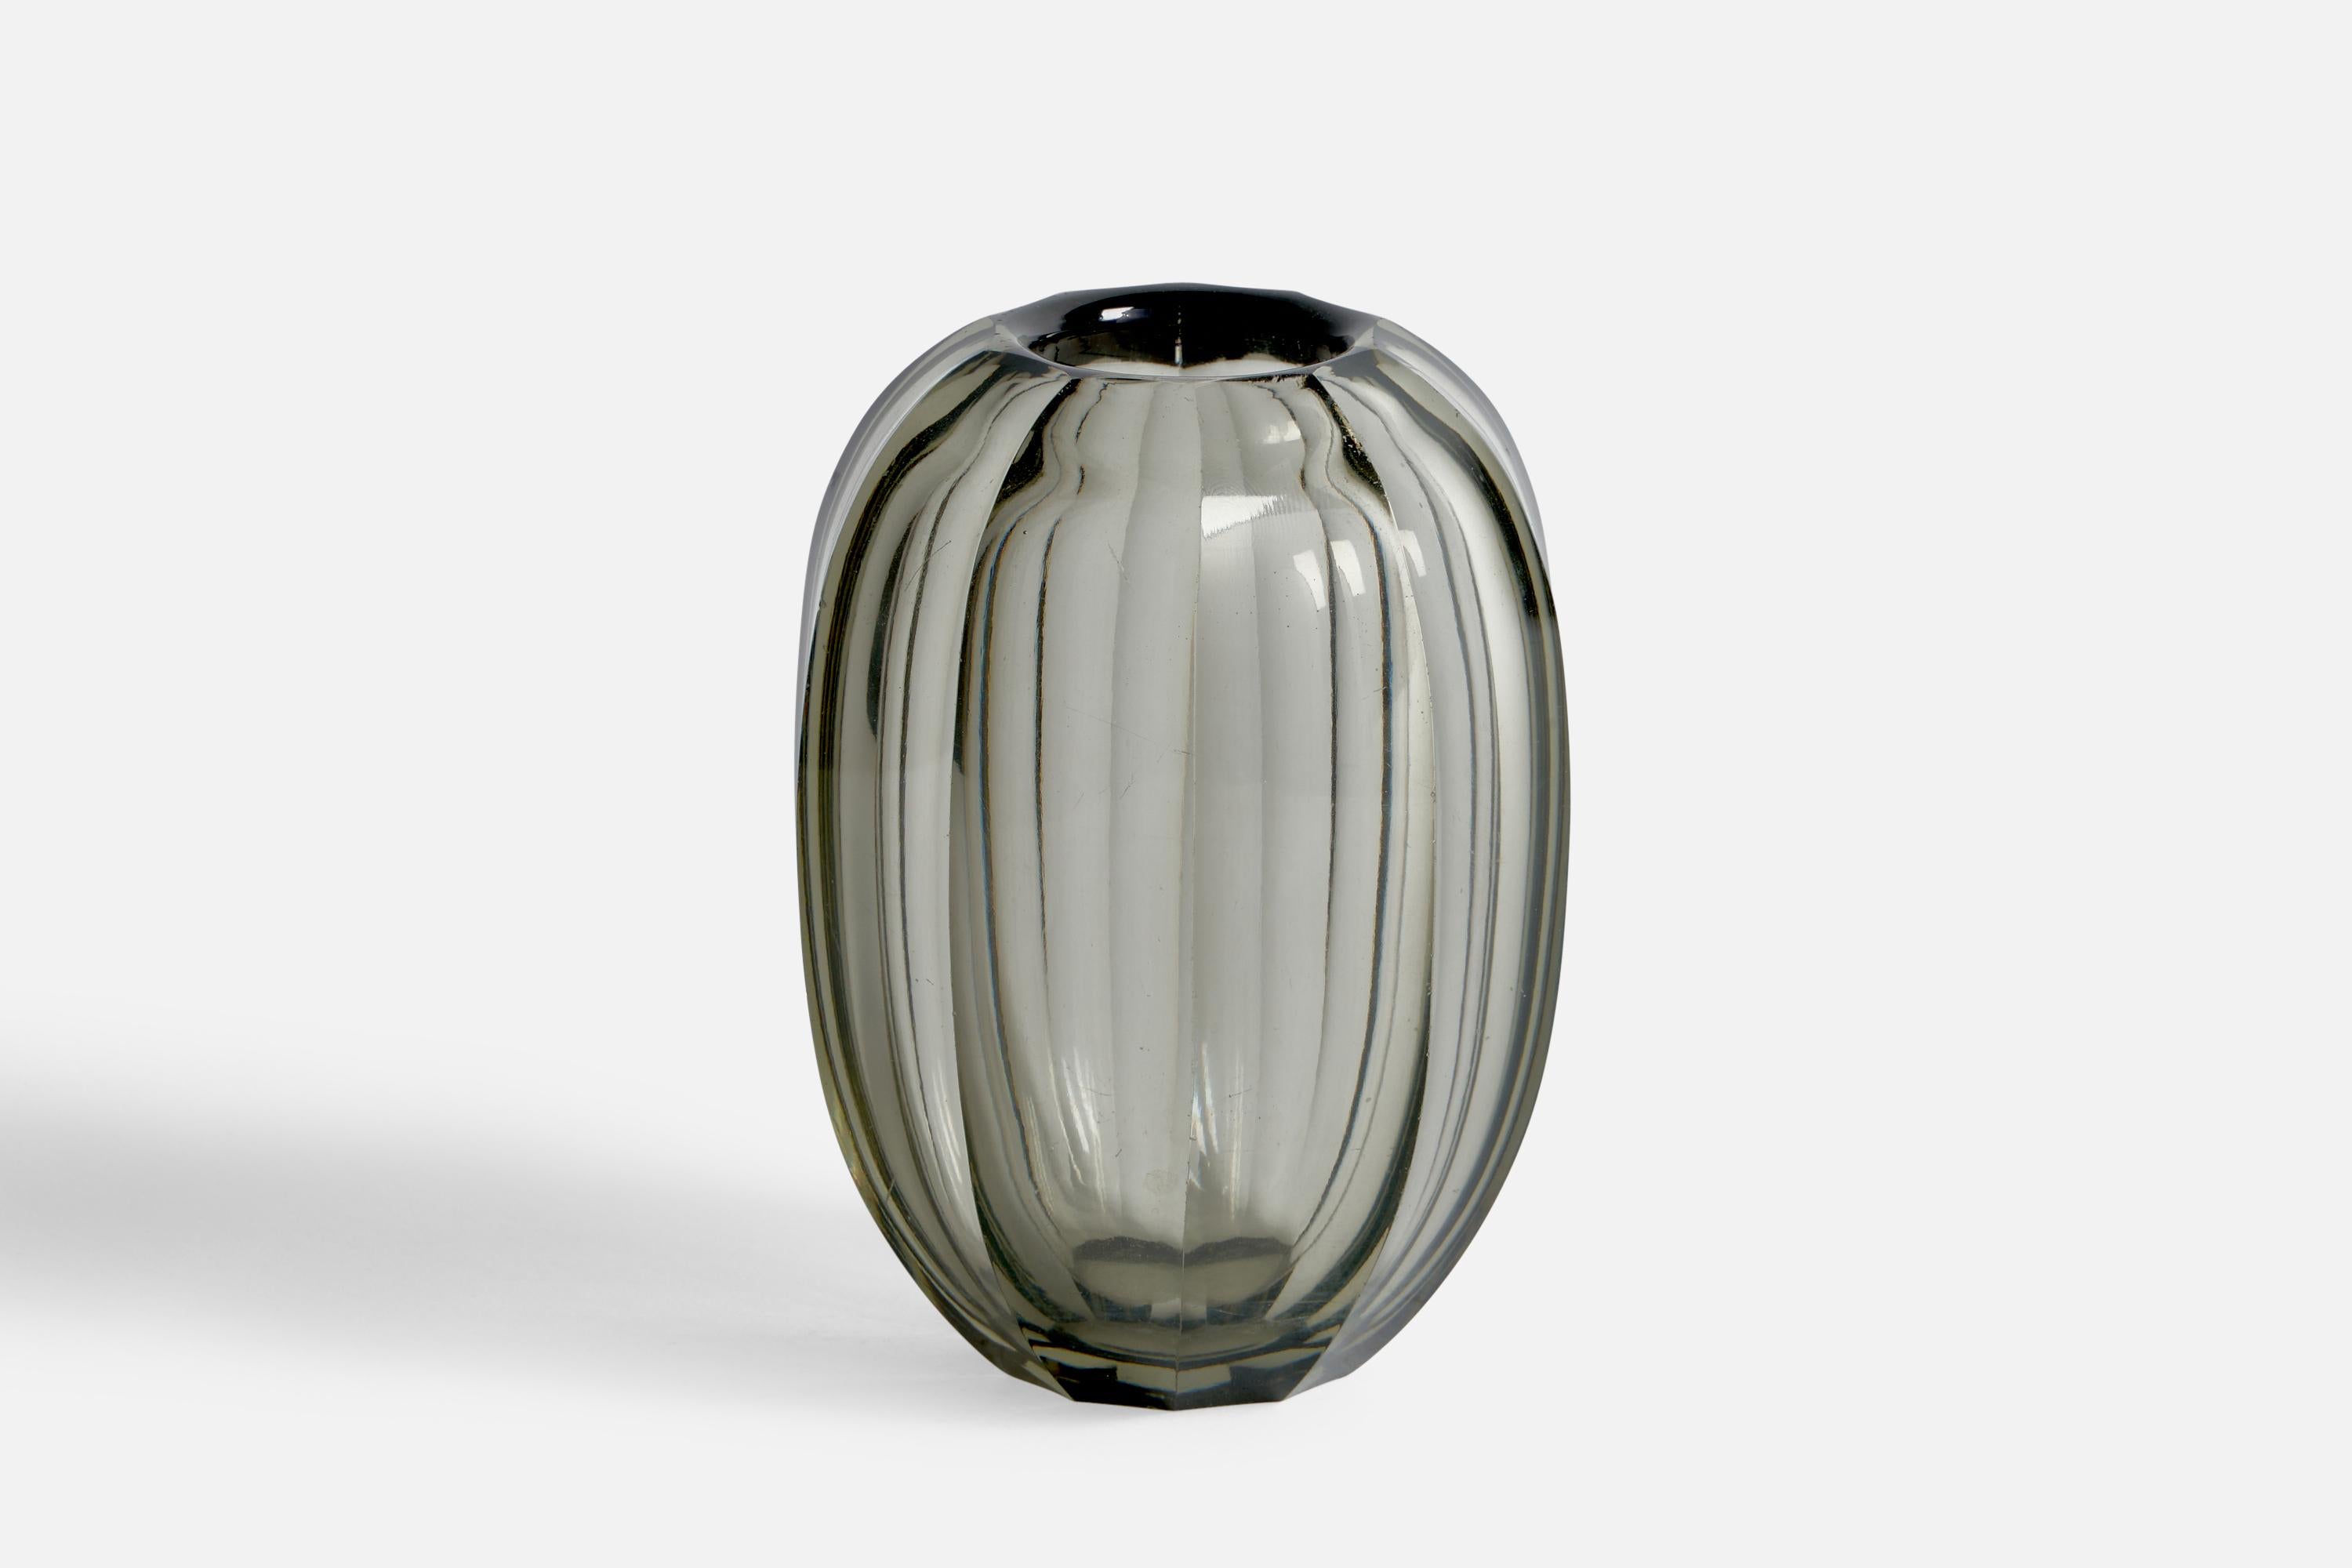 Vase aus mundgeblasenem, geriffeltem Glas, entworfen von Edward Hald, hergestellt von Orrefors, Schweden, 1930er Jahre.